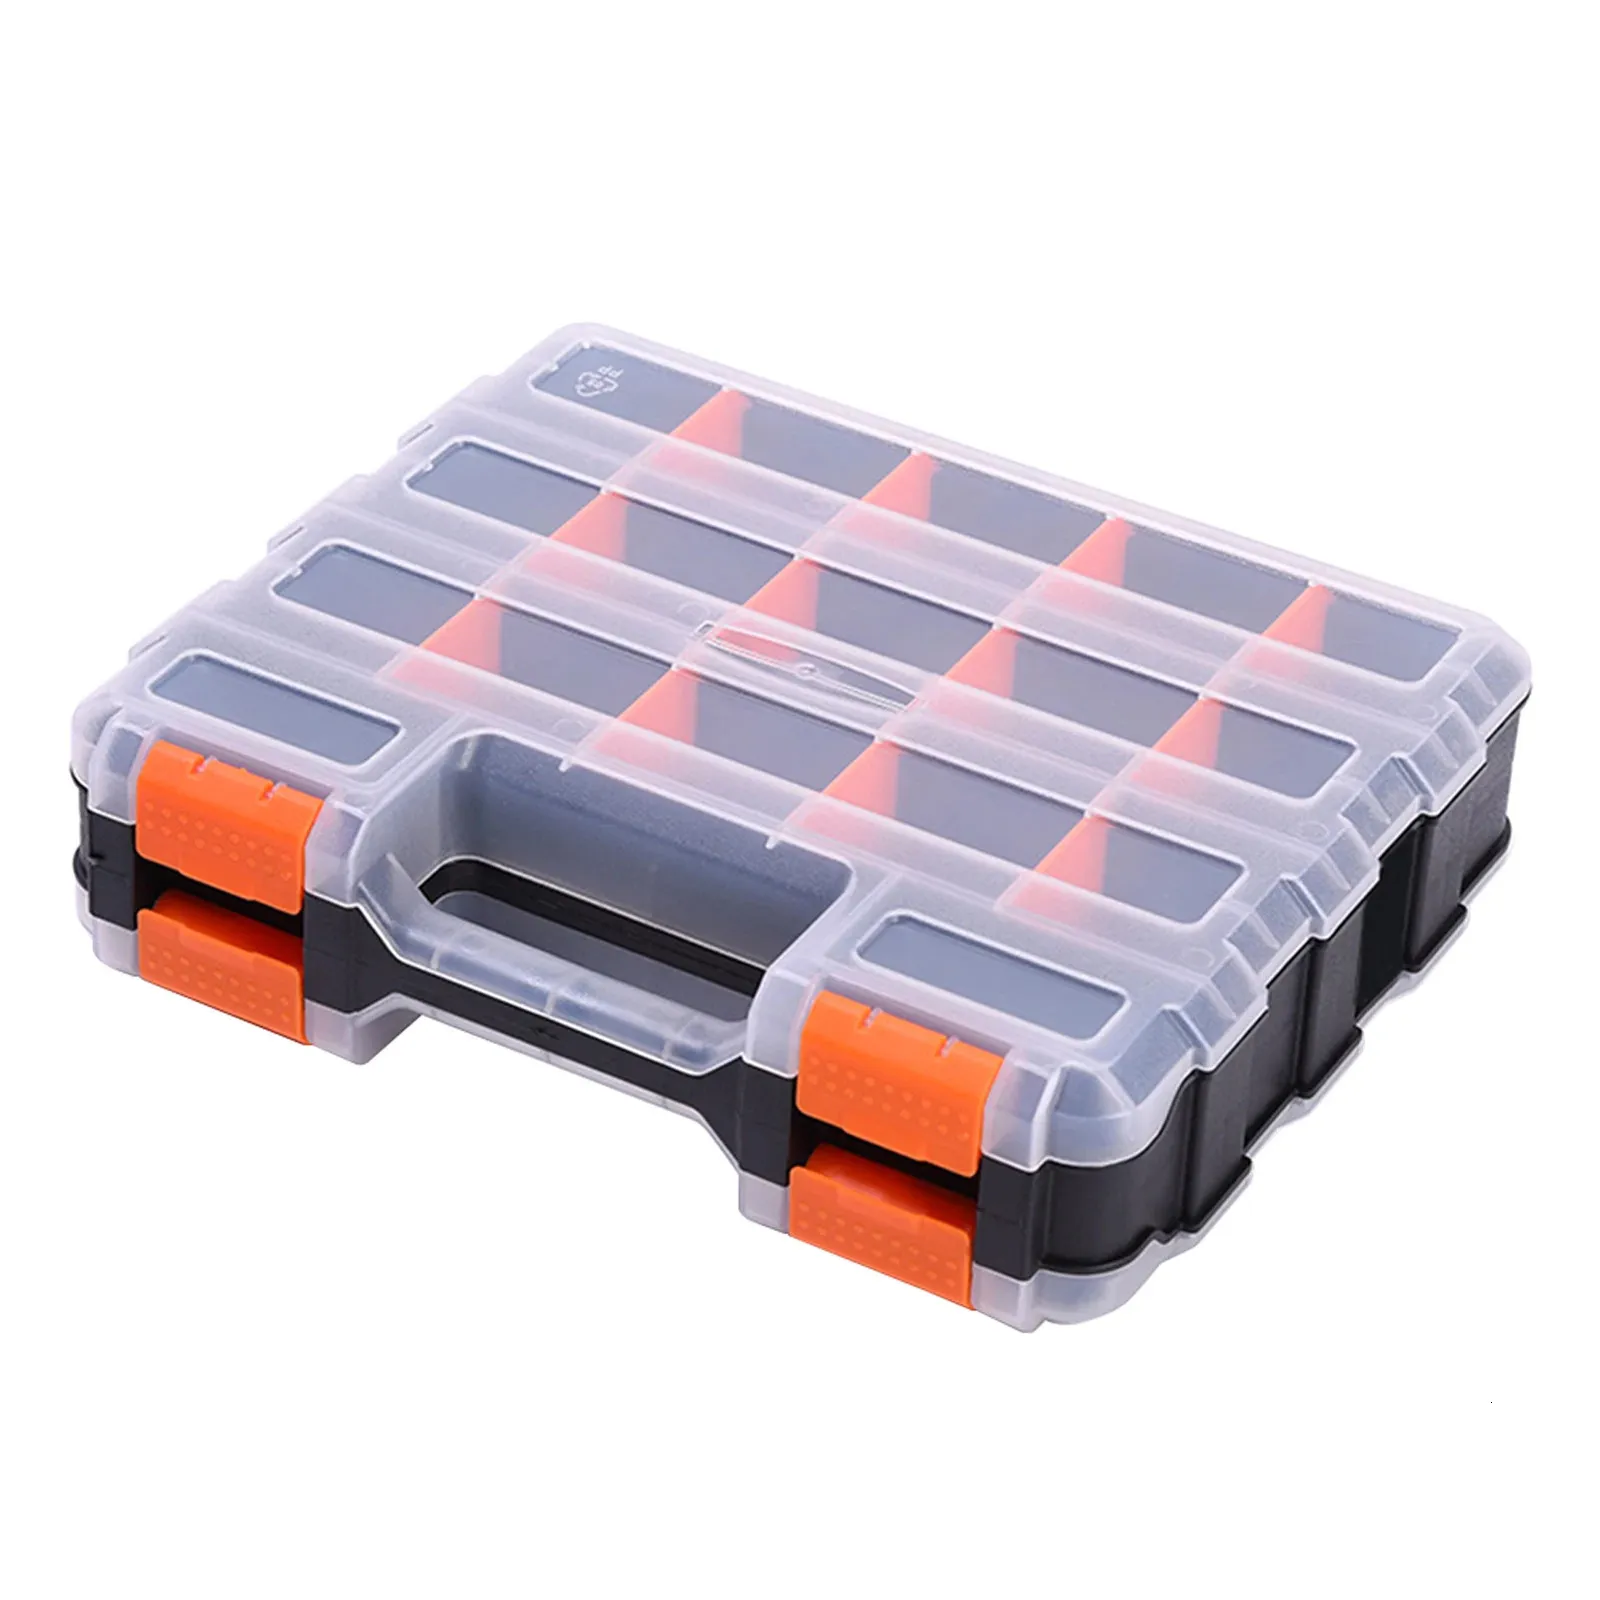 Caixa de ferramentas plástico porcas de dupla face de hardware portátil caixa de armazenamento para parafusos pregos duráveis Divisores removíveis Caixa de ferramentas Organizador da caixa de ferramentas 231213